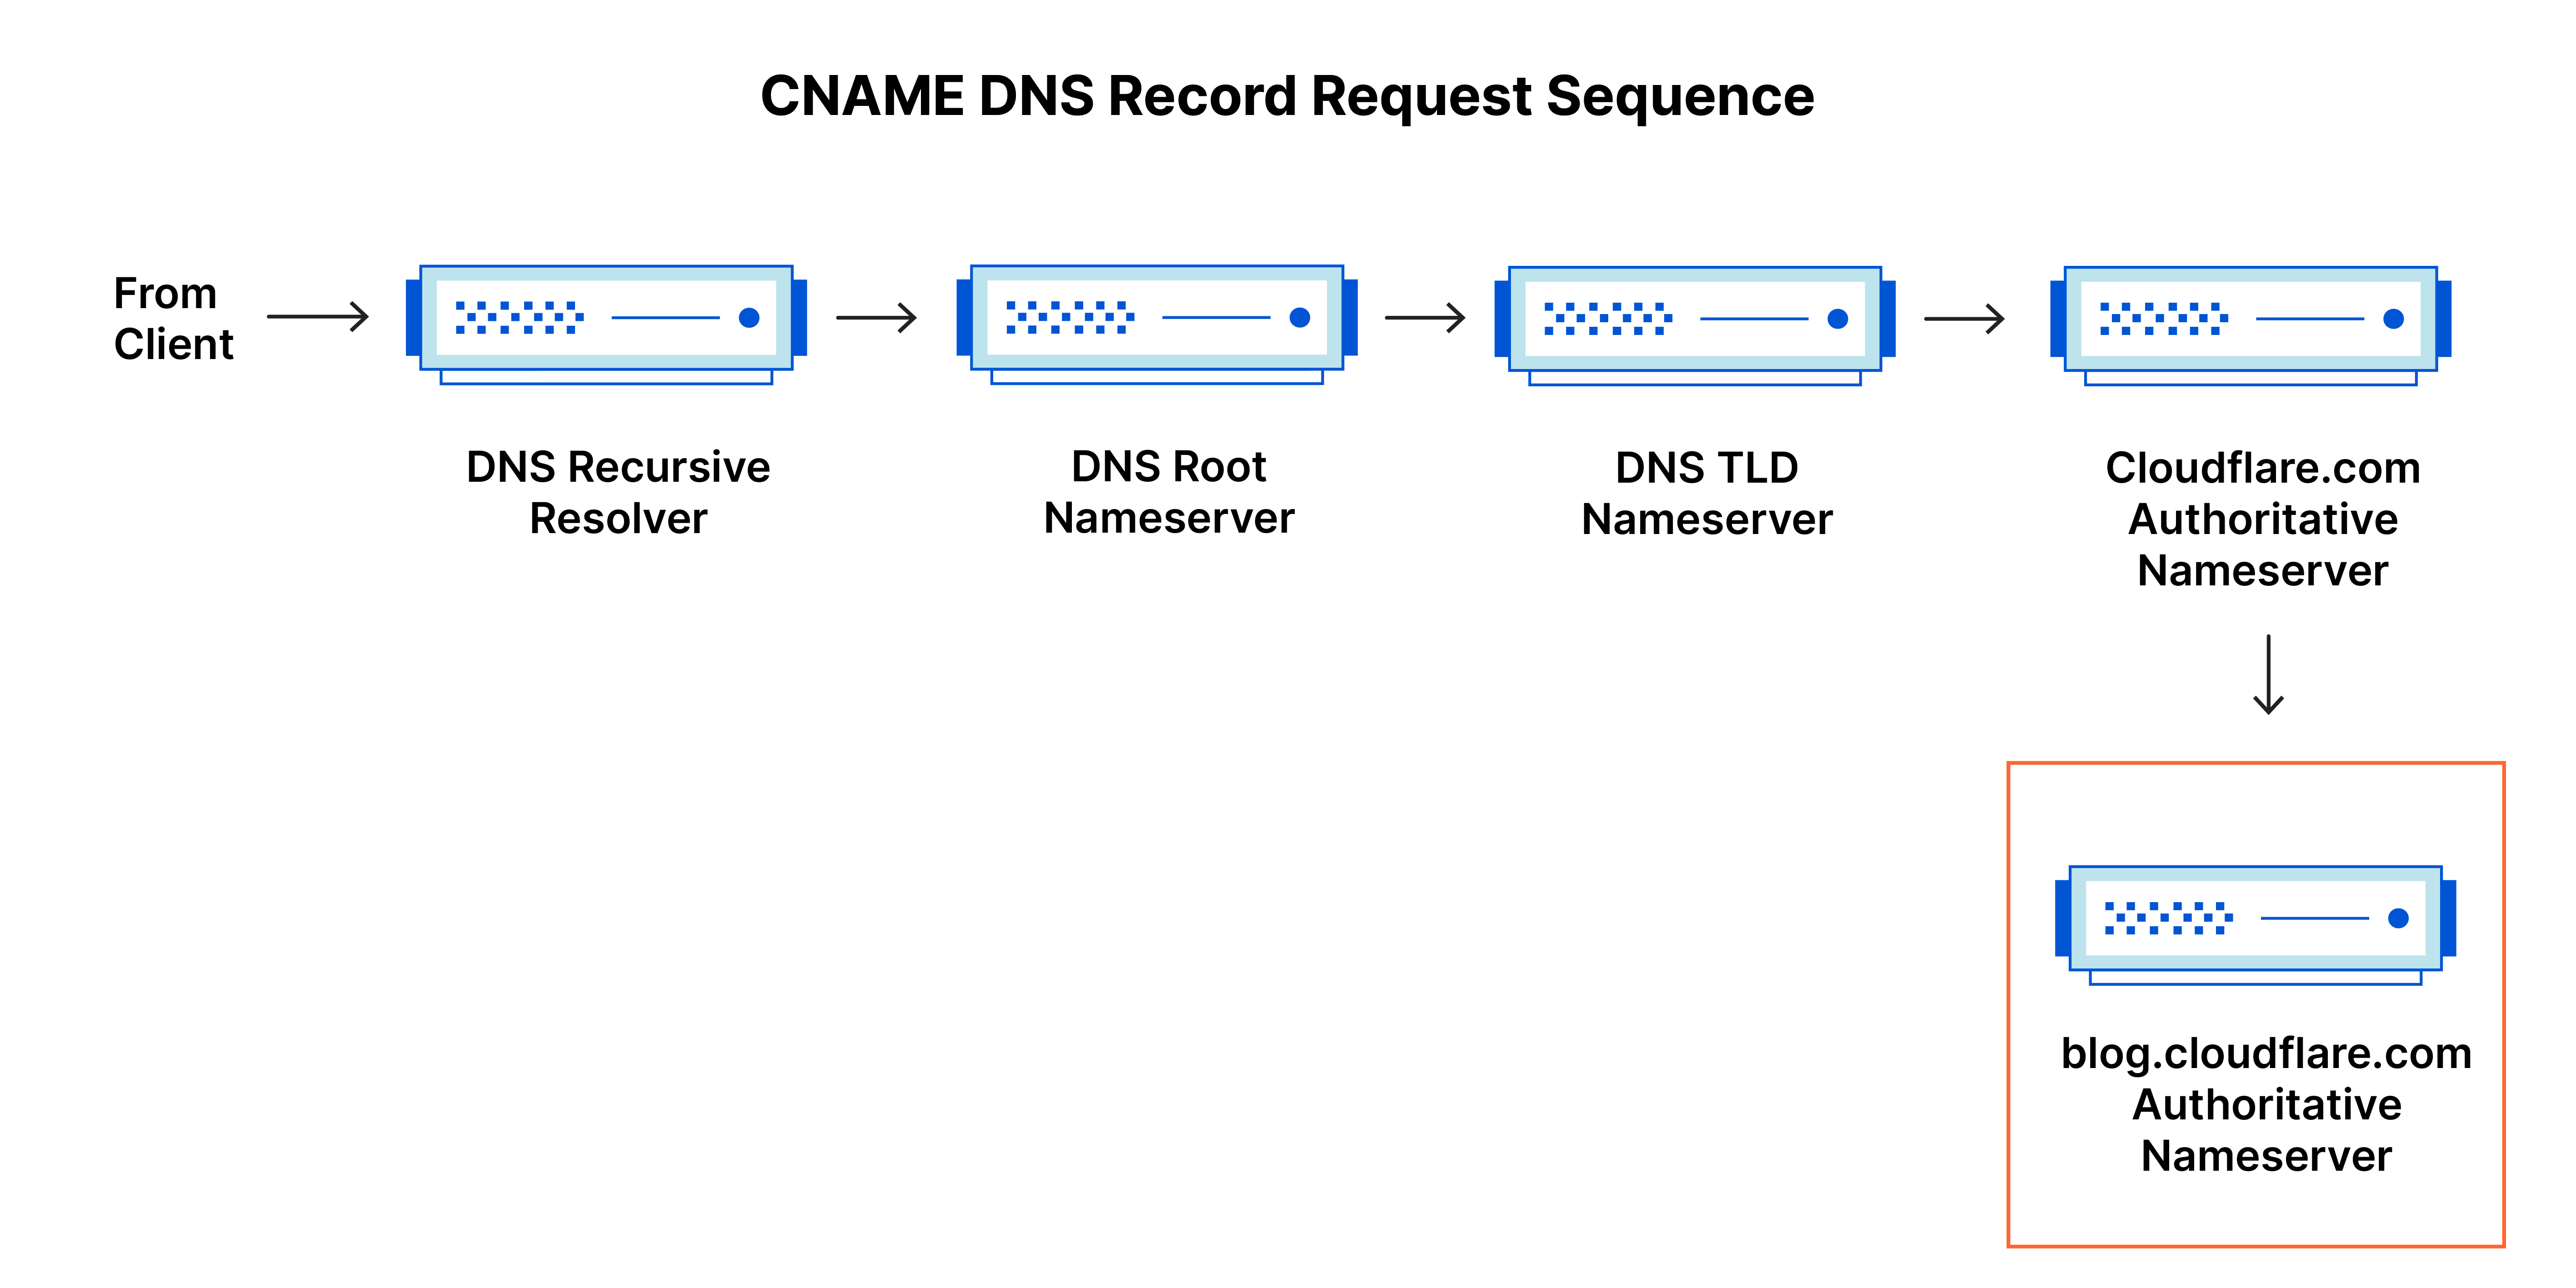 Séquence de requête d'enregistrement DNS - Requête DNS vers l'enregistrement CNAME pour le sous-domaine blog.cloudflare.com